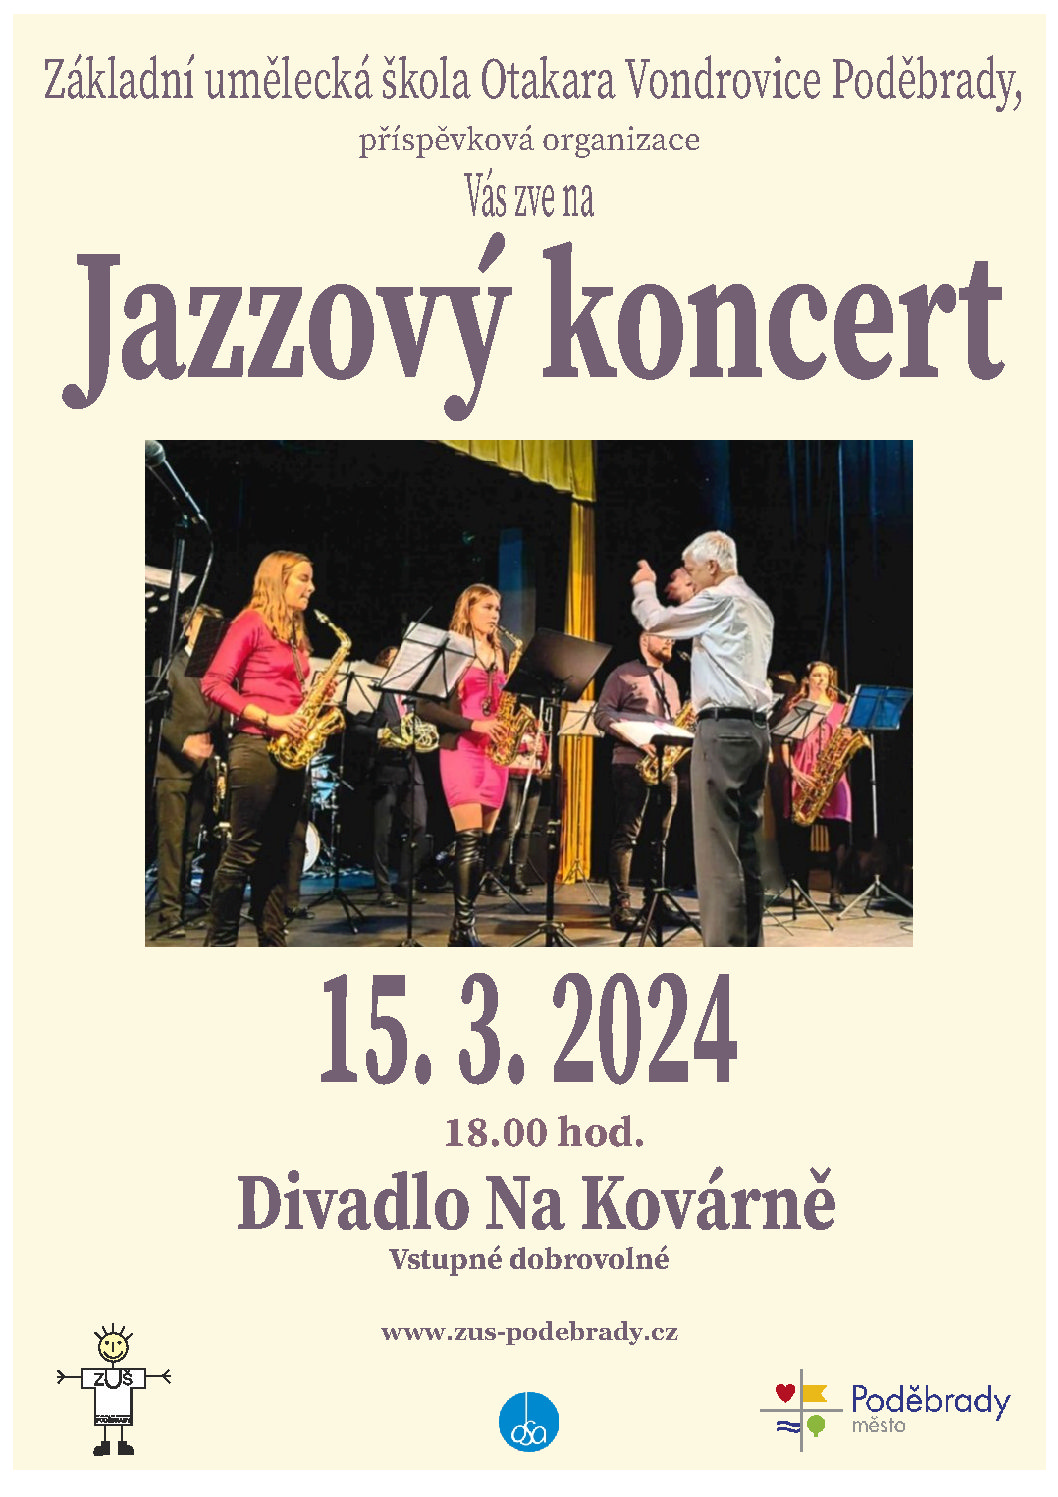 Jazzový koncert 15. 3. 2024